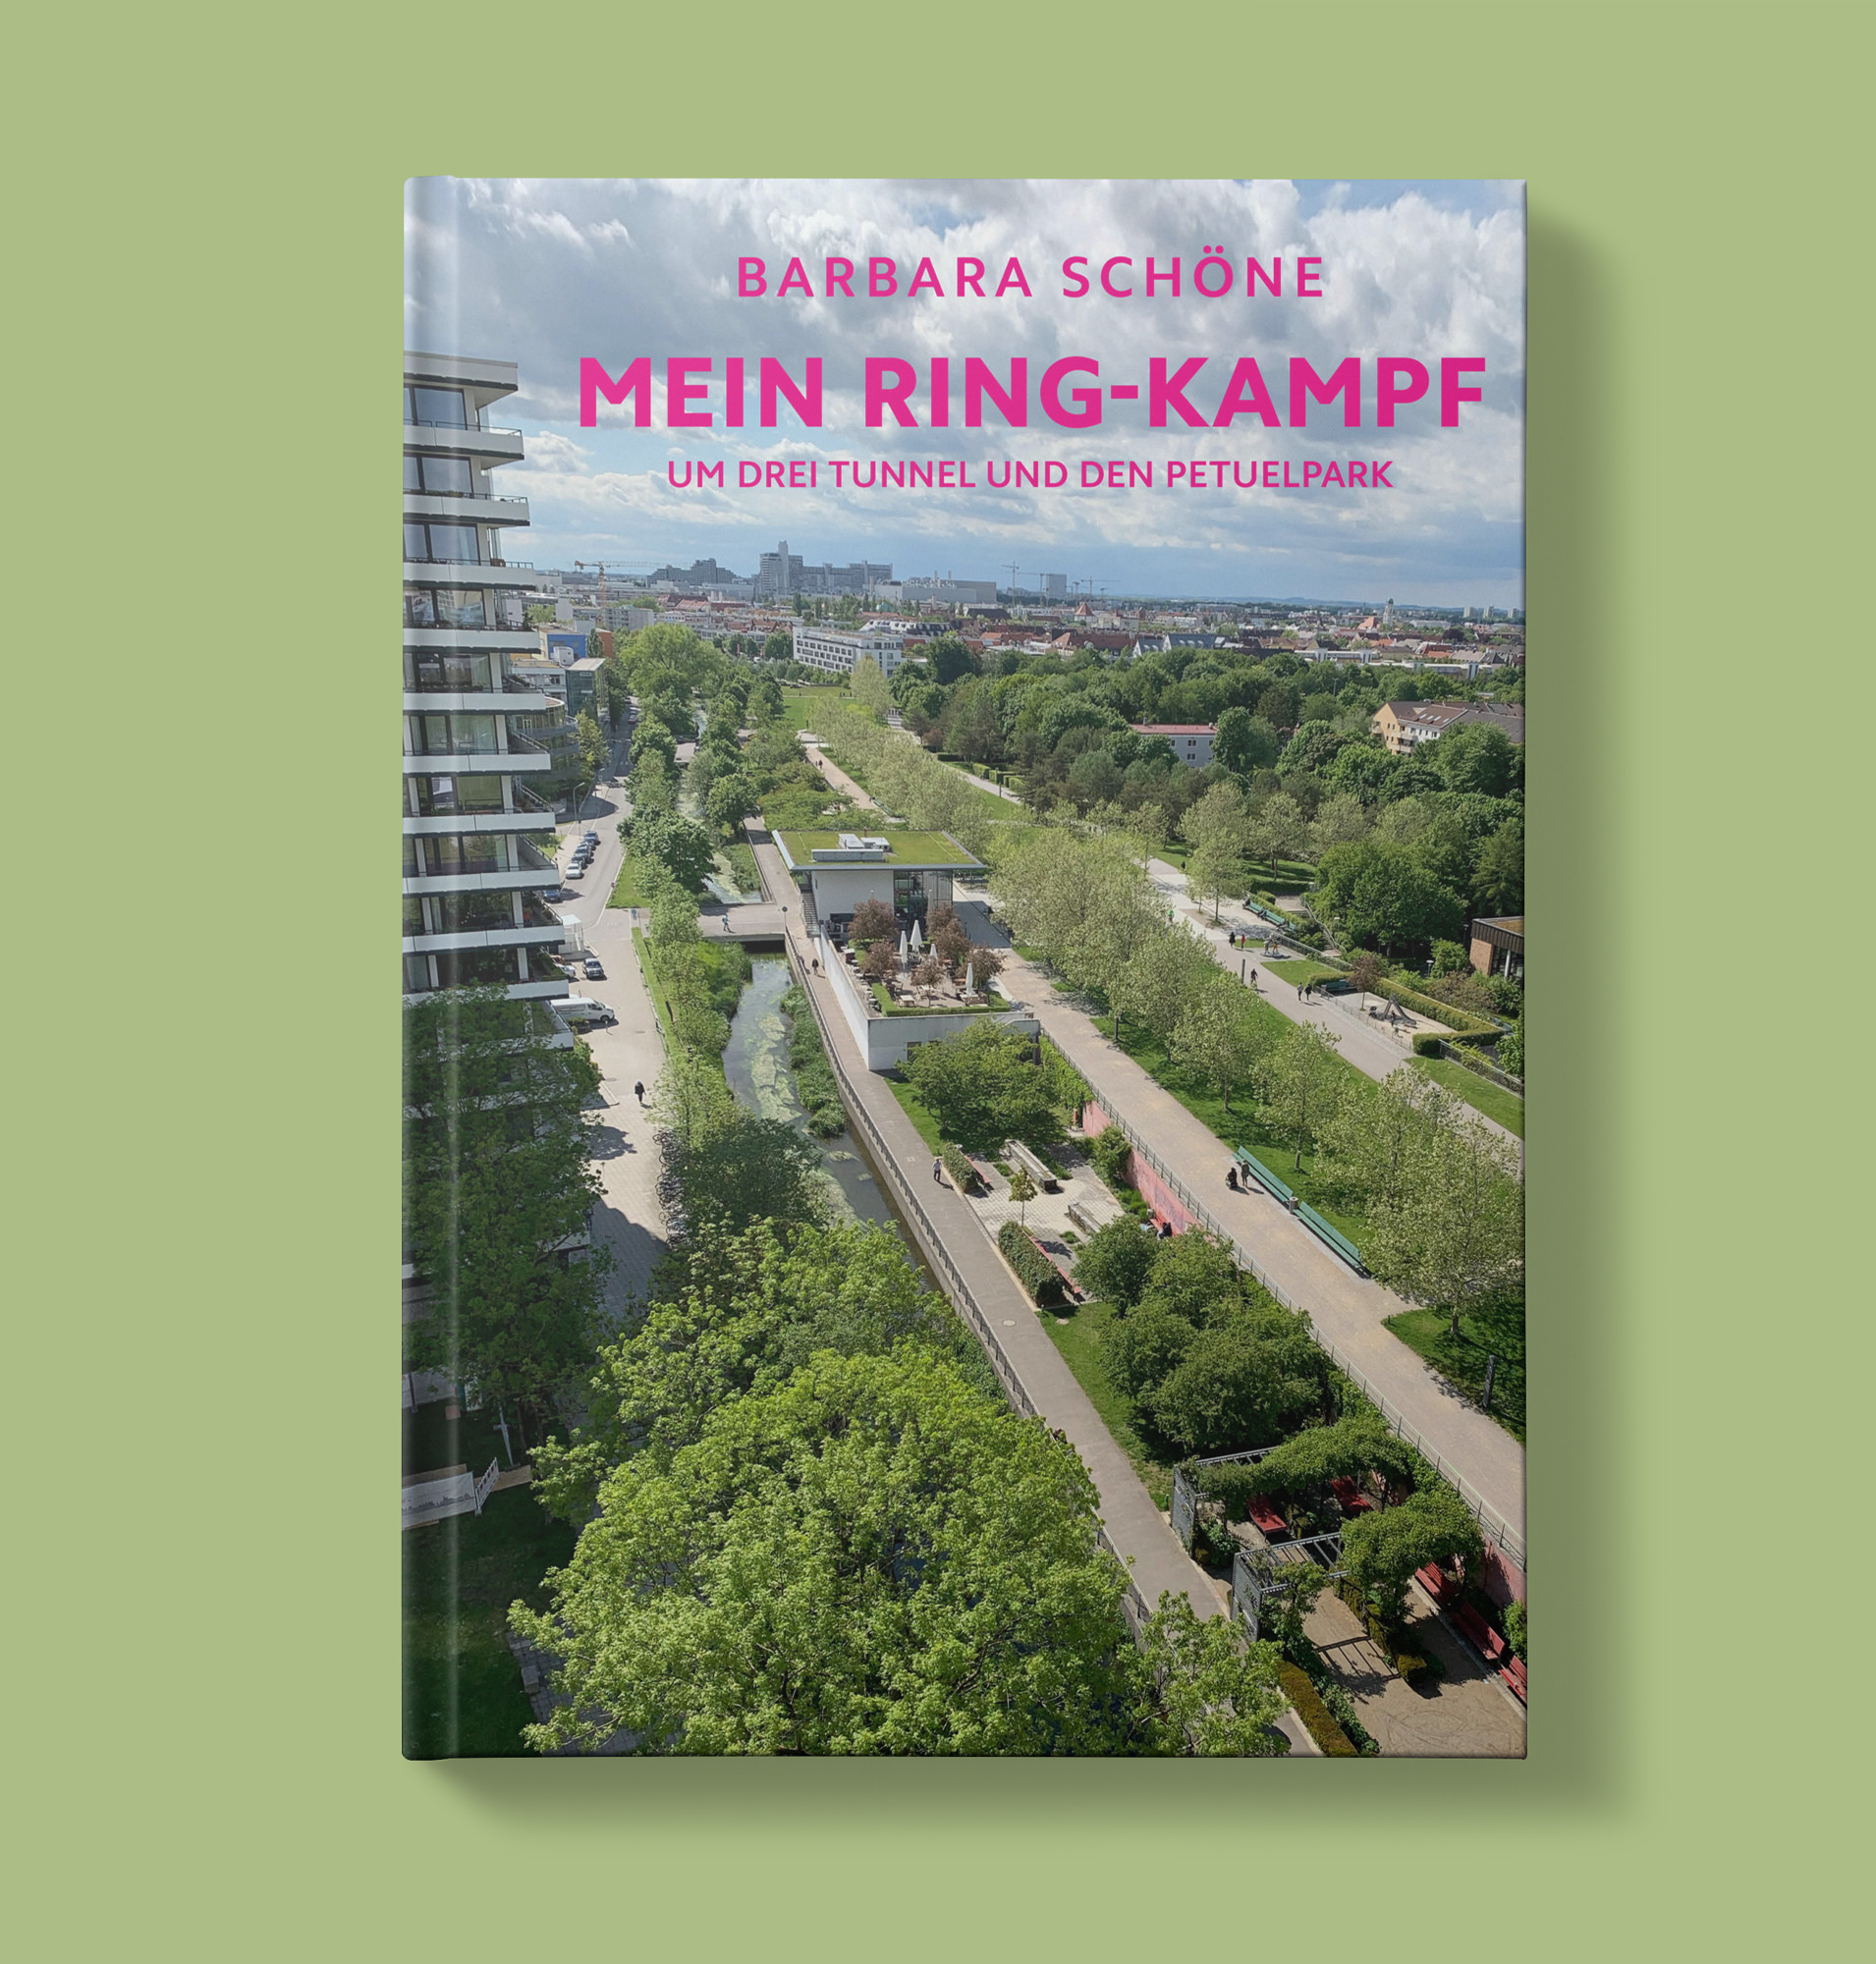 Schöne Barbara - Mein Ring-Kampf um drei Tunnel und den Petuelpark